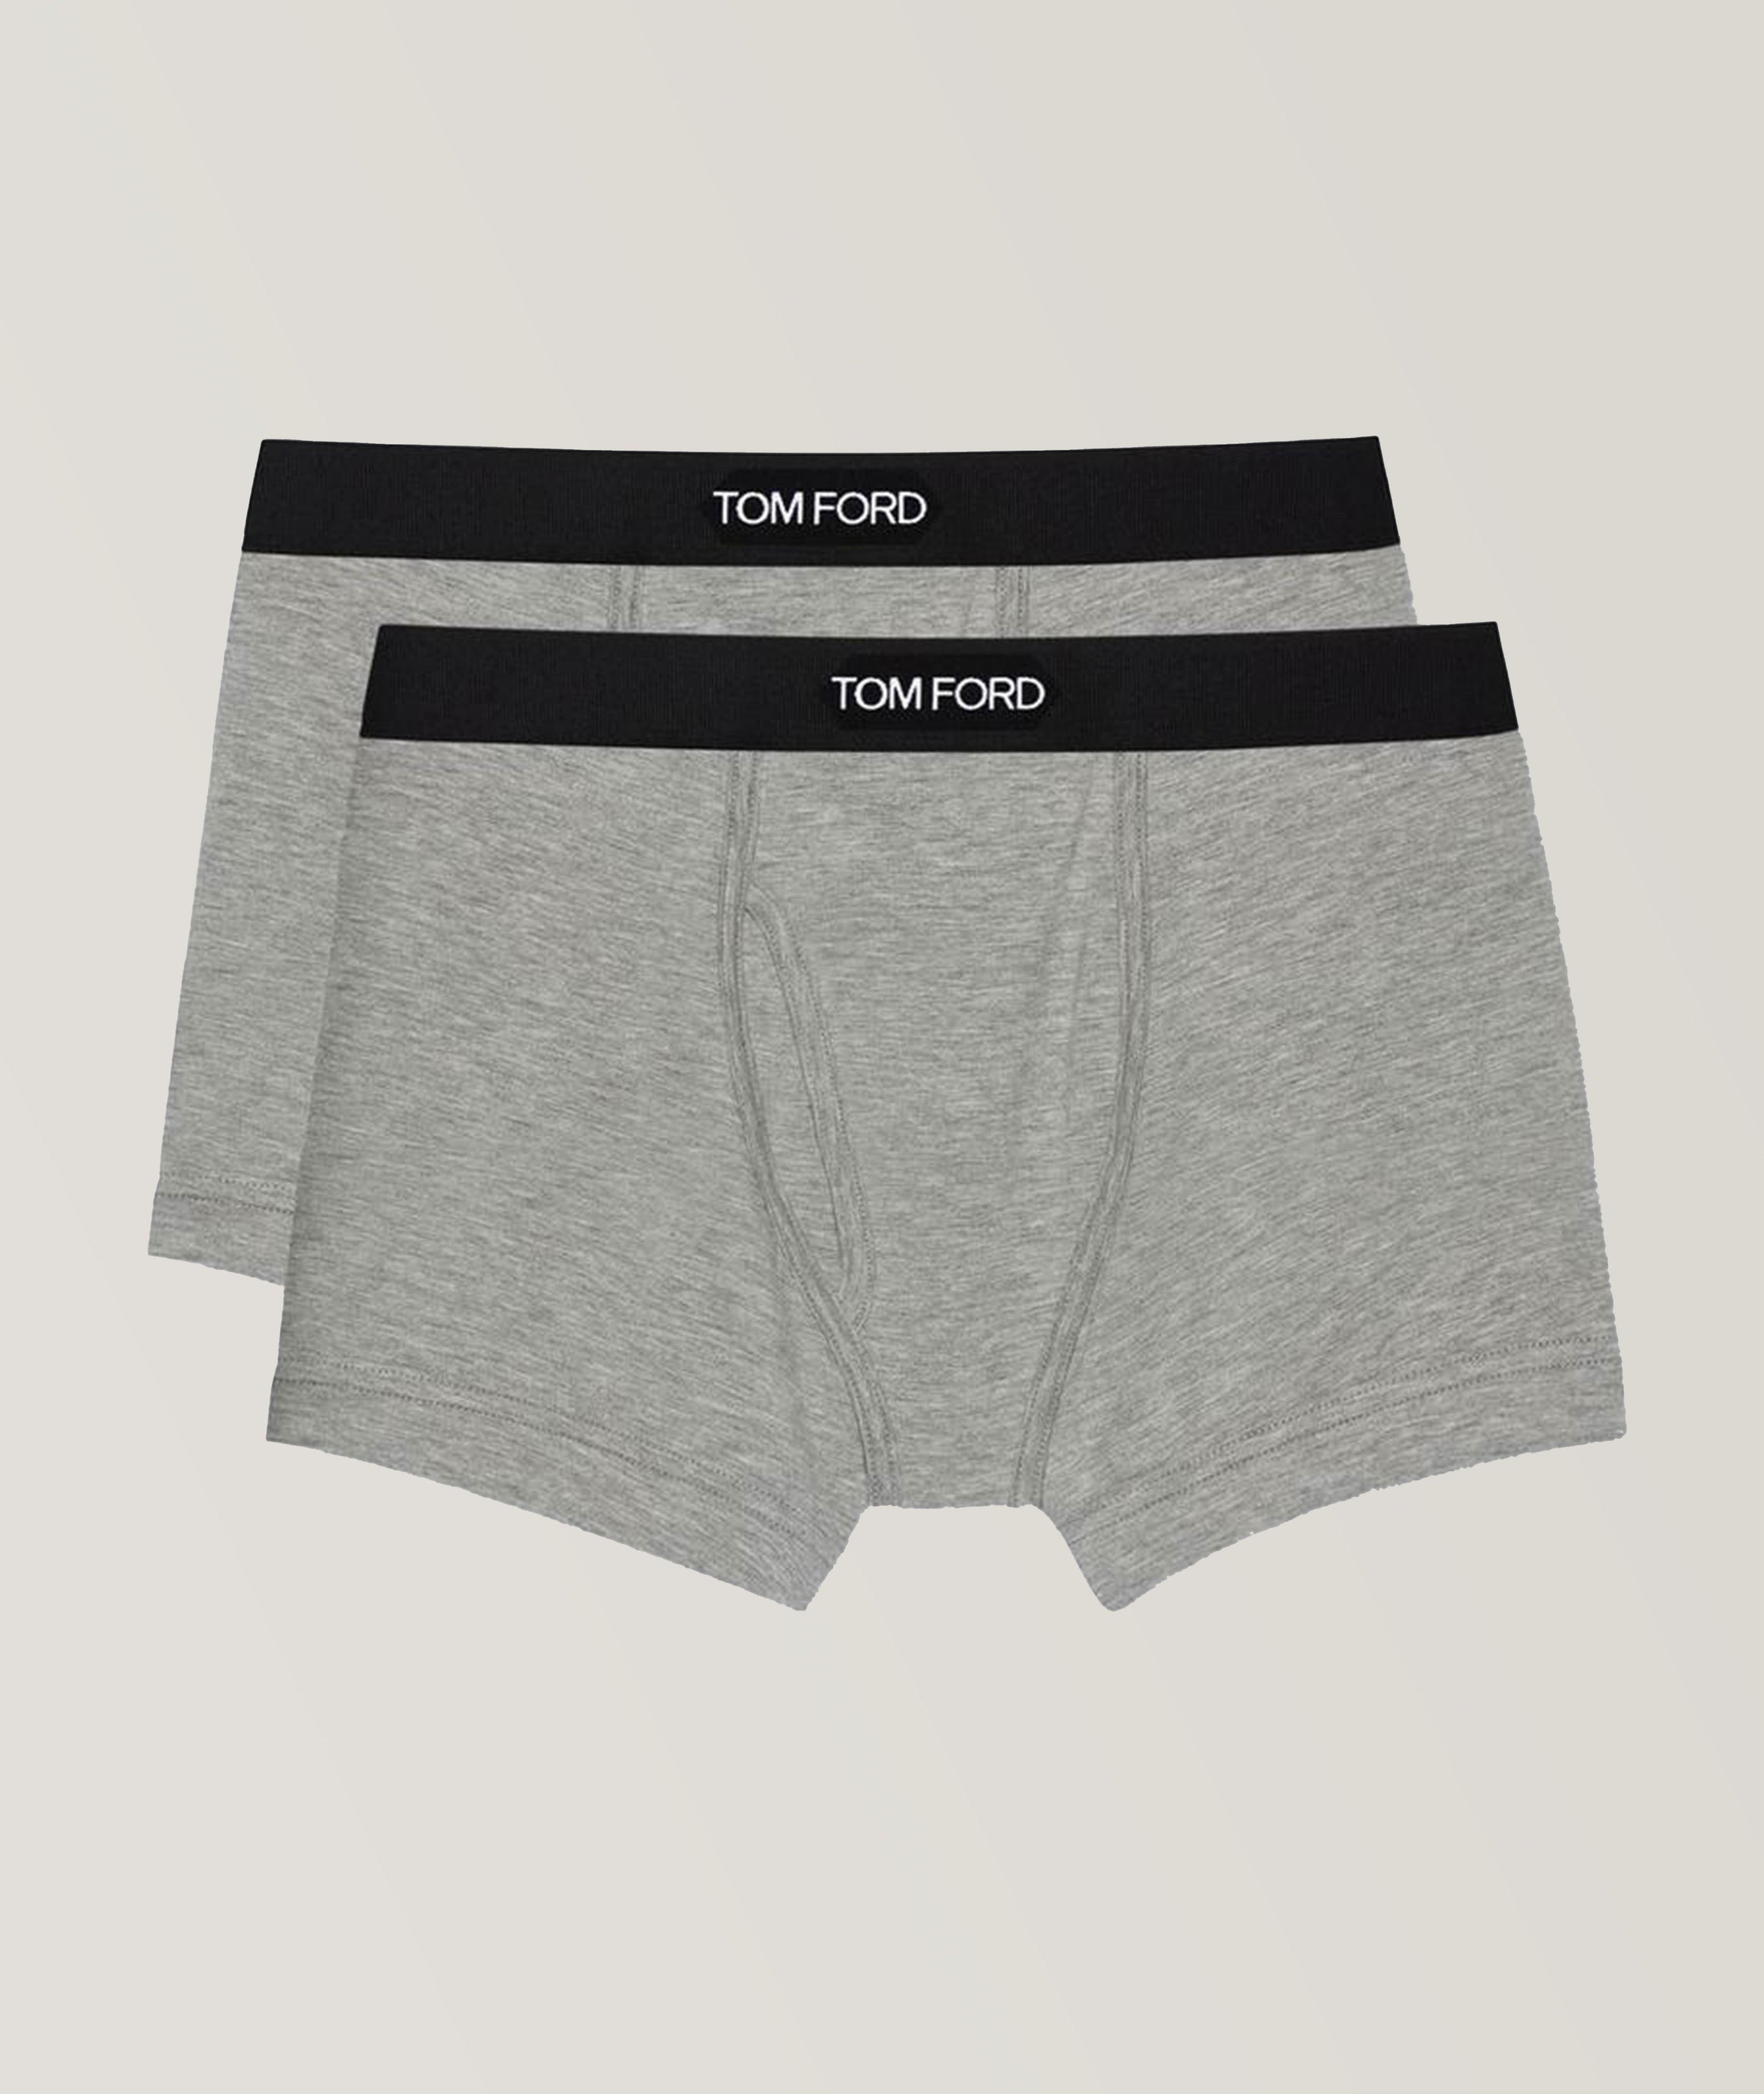 TOM FORD 2-Pack Cotton-Modal Boxer Briefs, Underwear